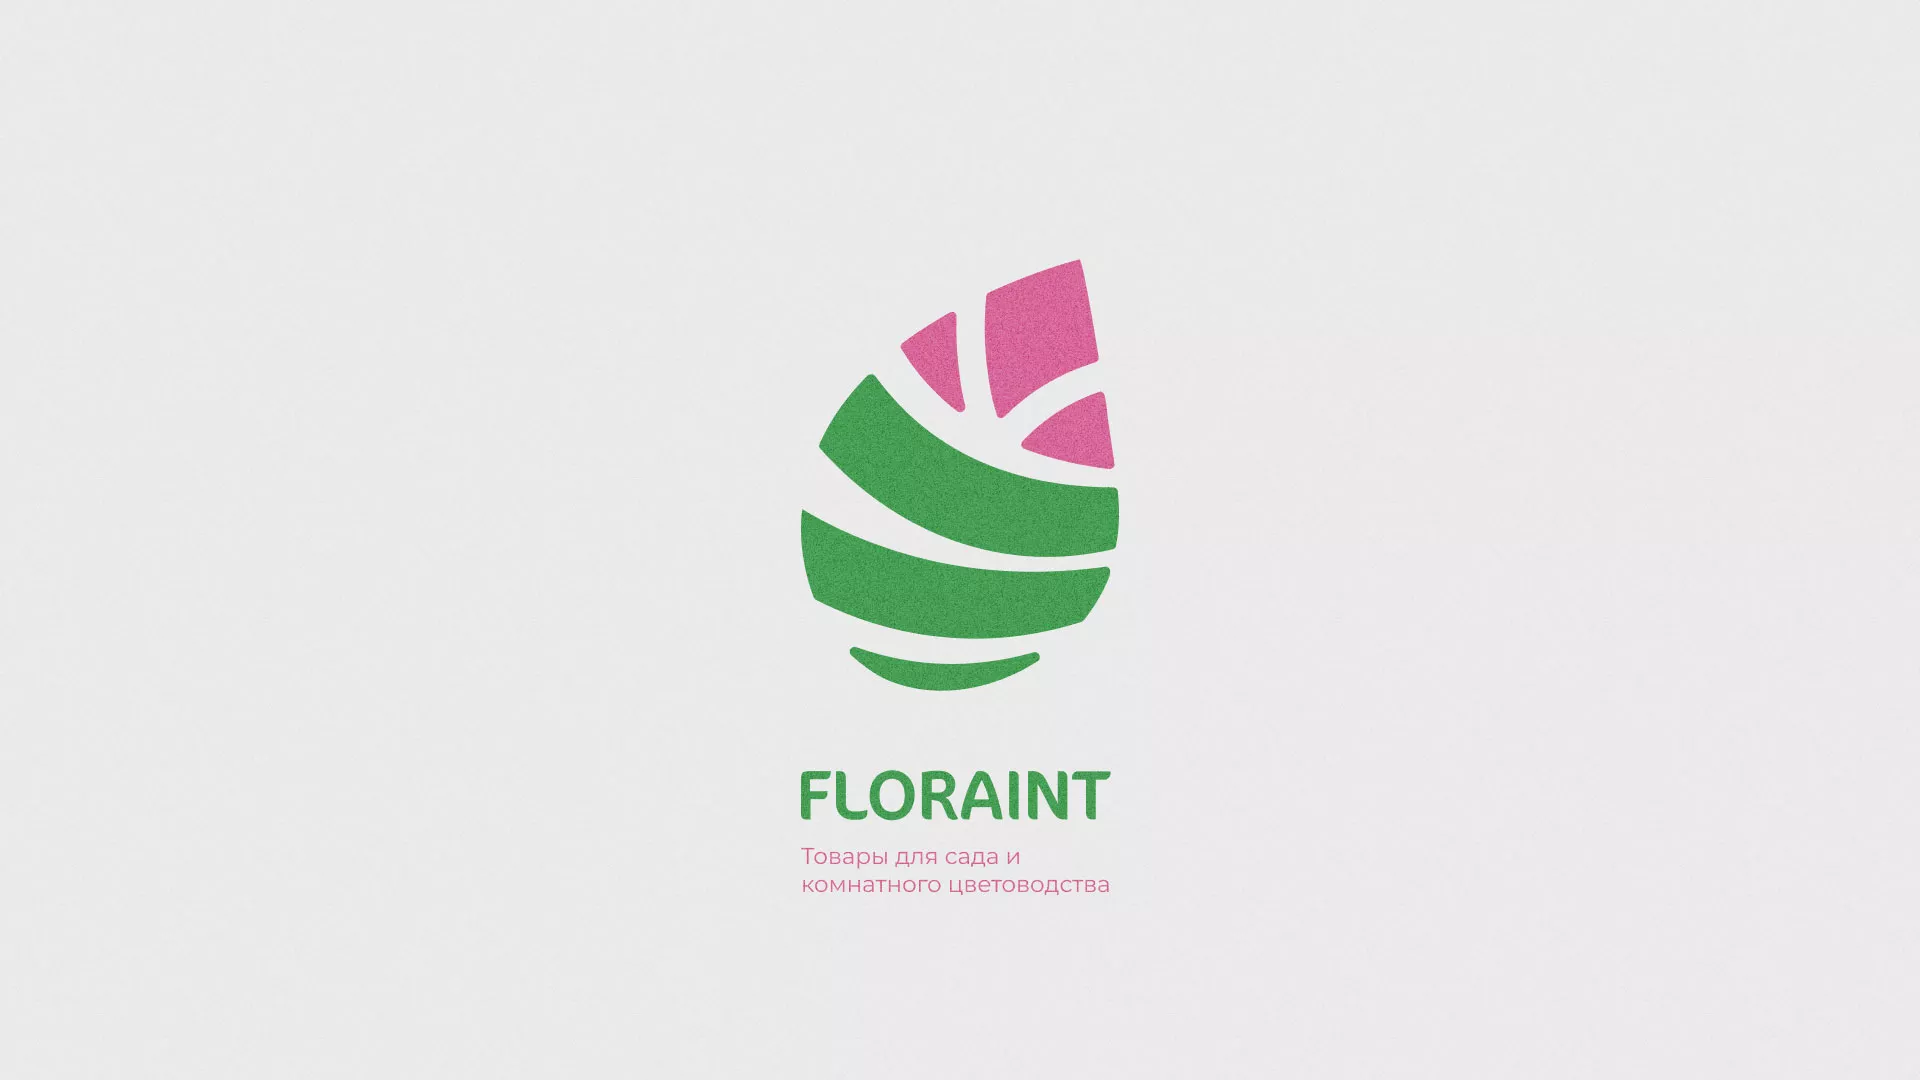 Разработка оформления профиля Instagram для магазина «Floraint» в Кондопоге